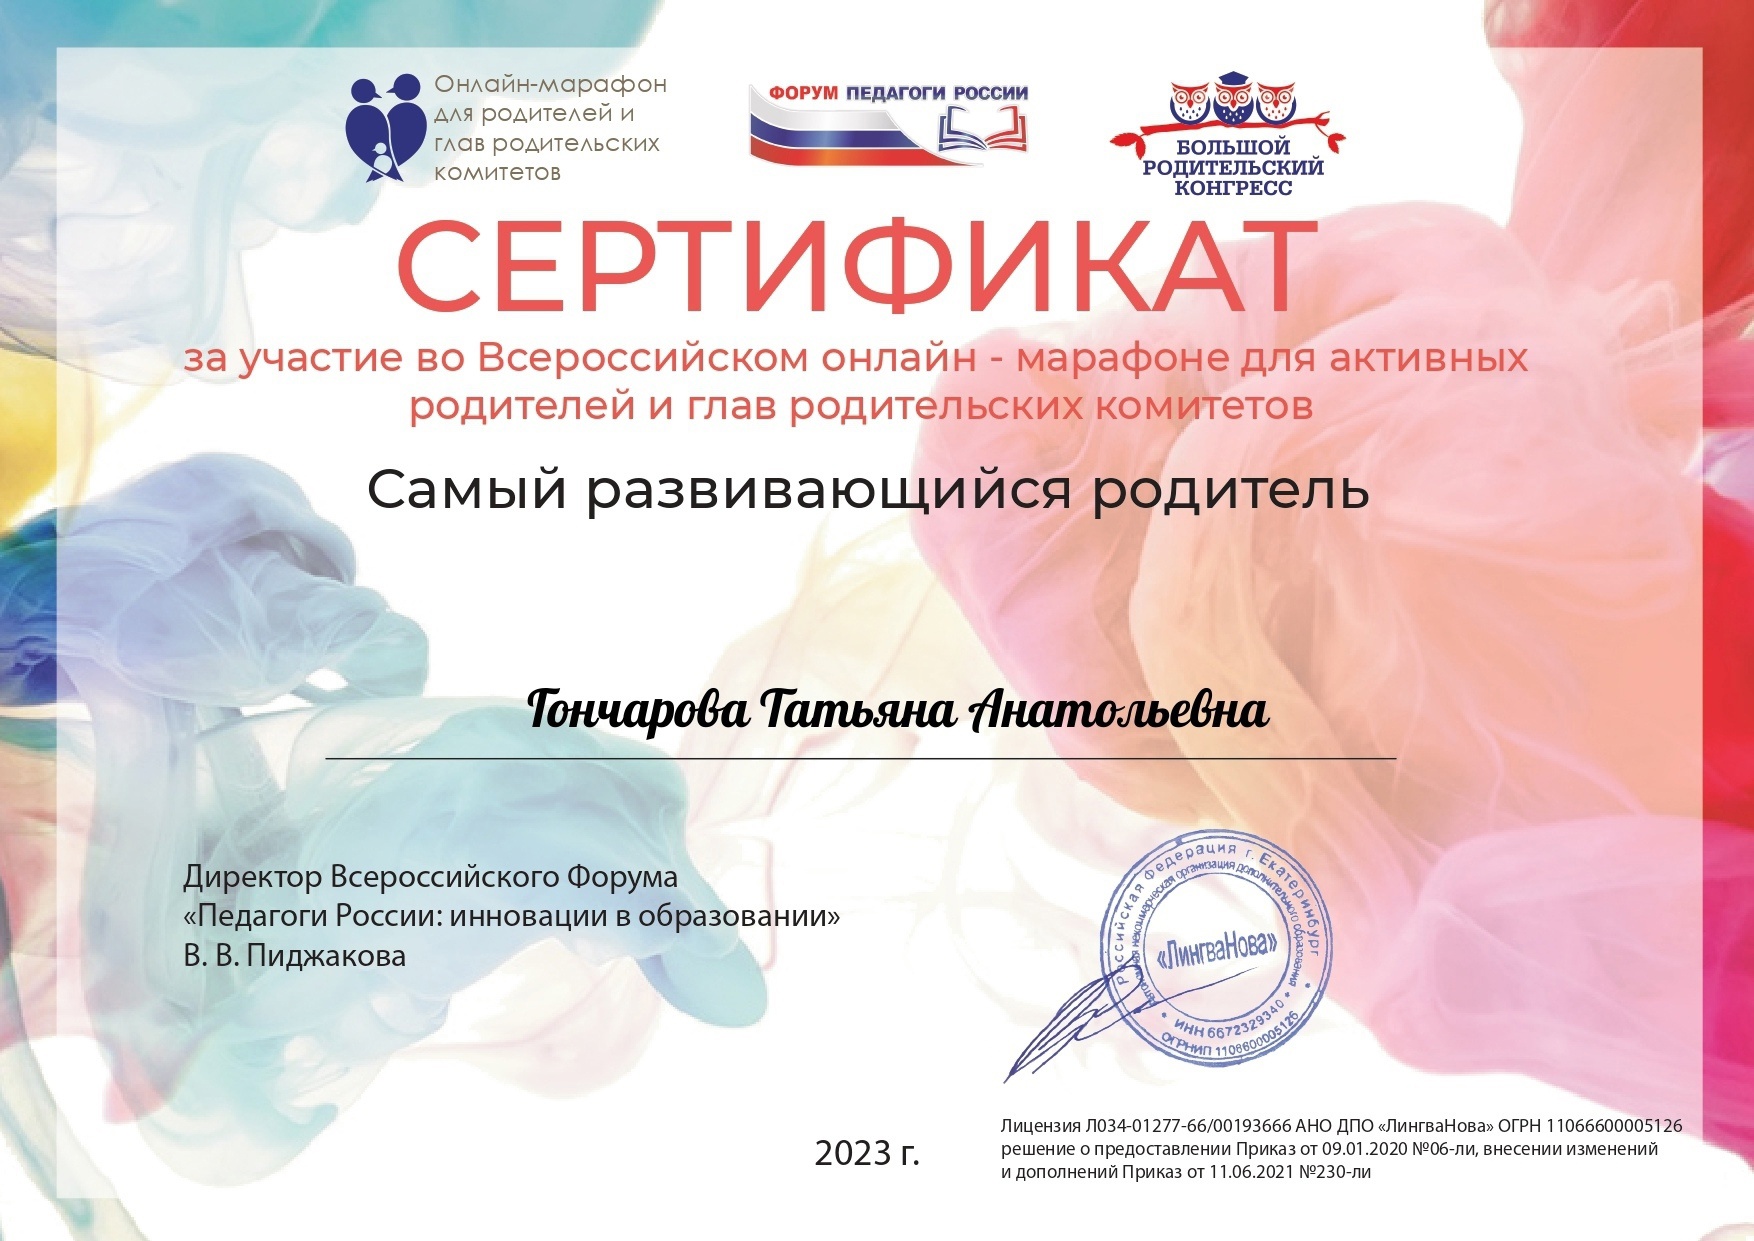 Всероссийский онлайн-марафон глав родительского комитета и активных родителей.